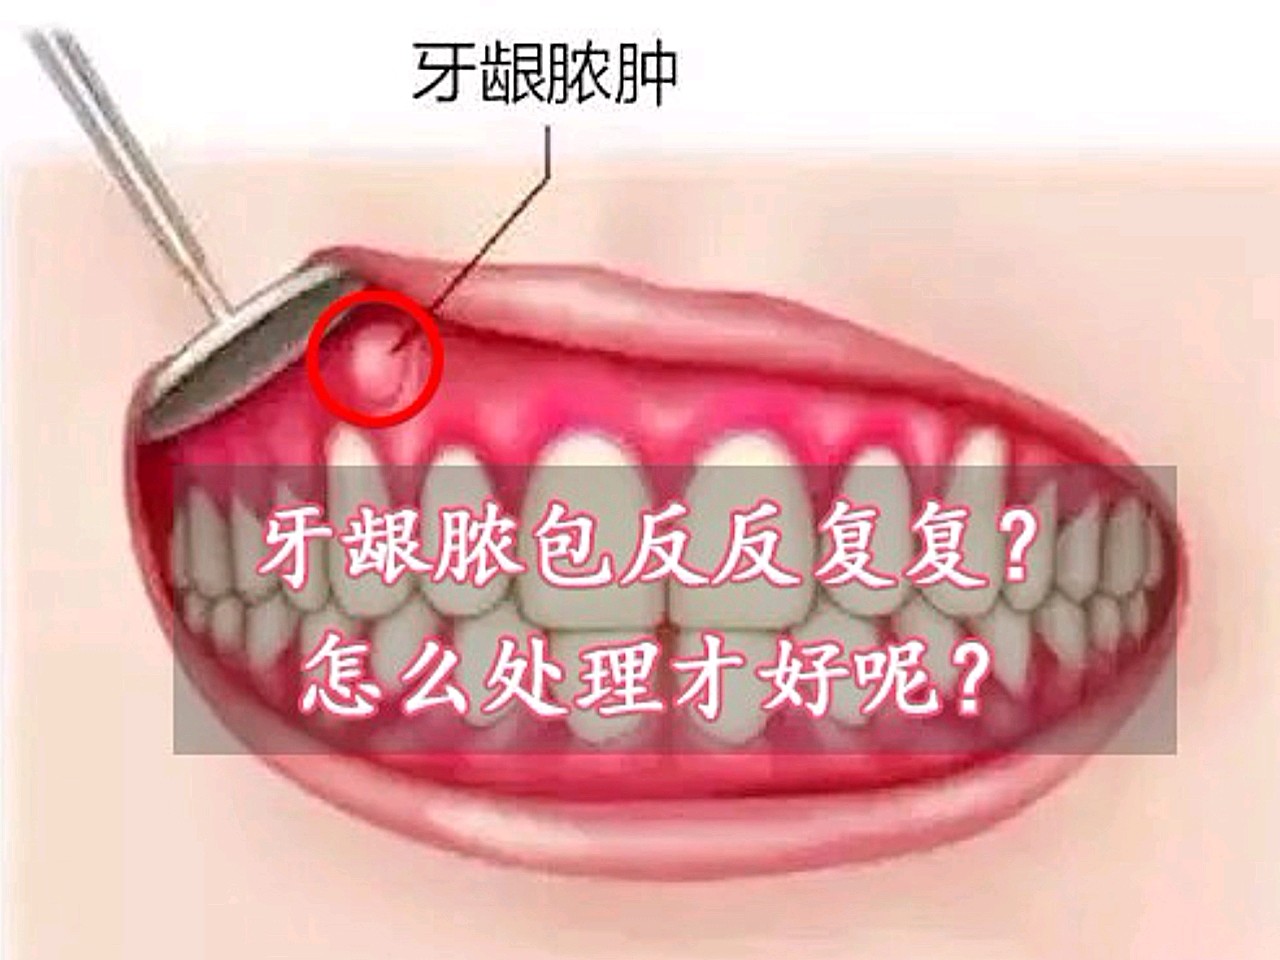 牙肉重建案例分享 - Dr. Implant 新竹光明牙醫診所